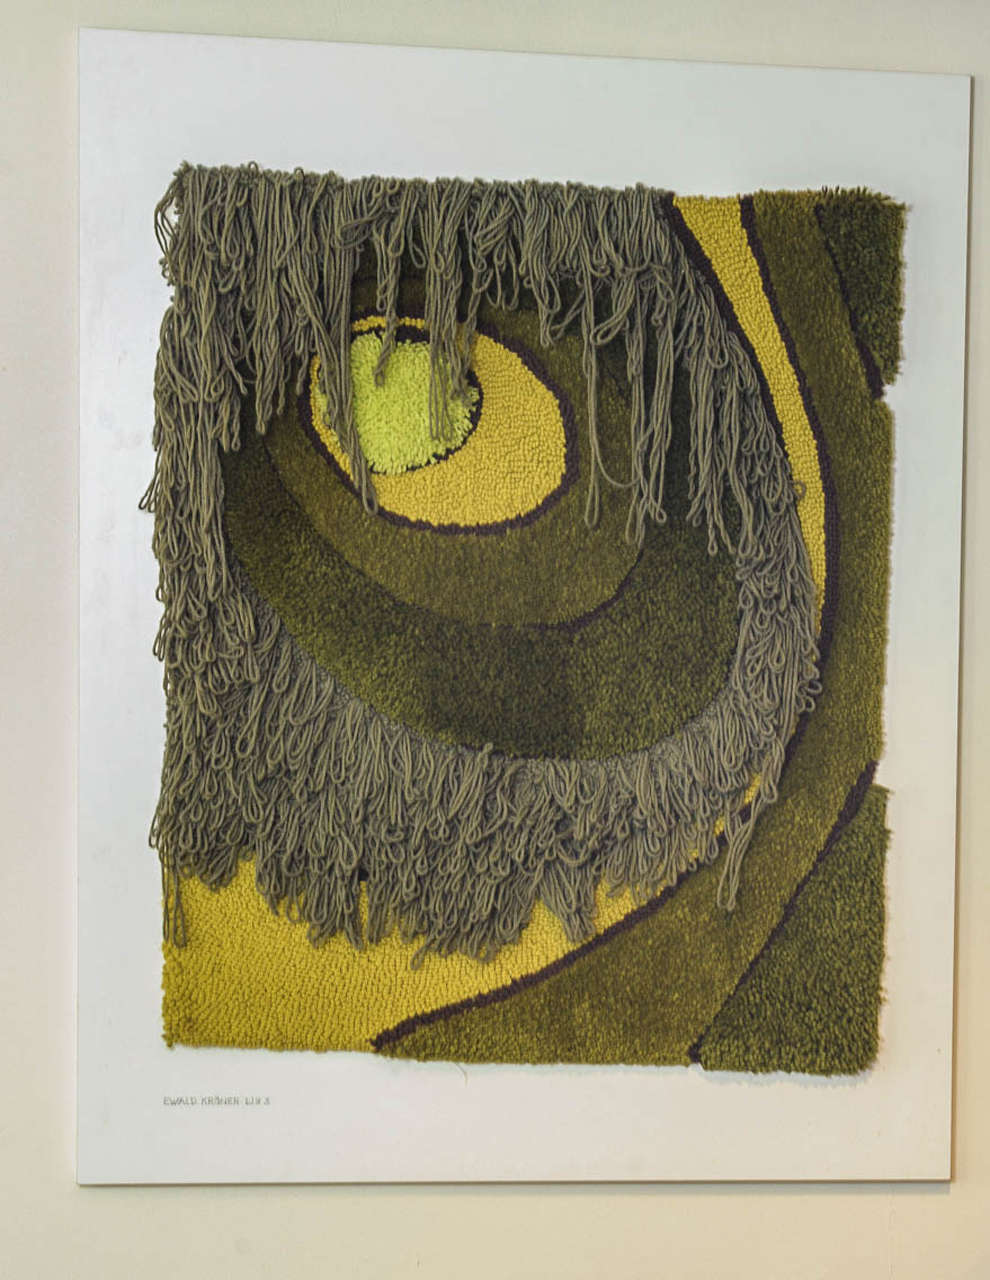 Ewald Kröner est considéré comme l'artiste allemand de référence pour les tapisseries et tapis d'art tuftés. Pendant plusieurs décennies, depuis les années 1960, il a promu les tapisseries artistiques. Kro¨ner a inclus dans ses attributions un